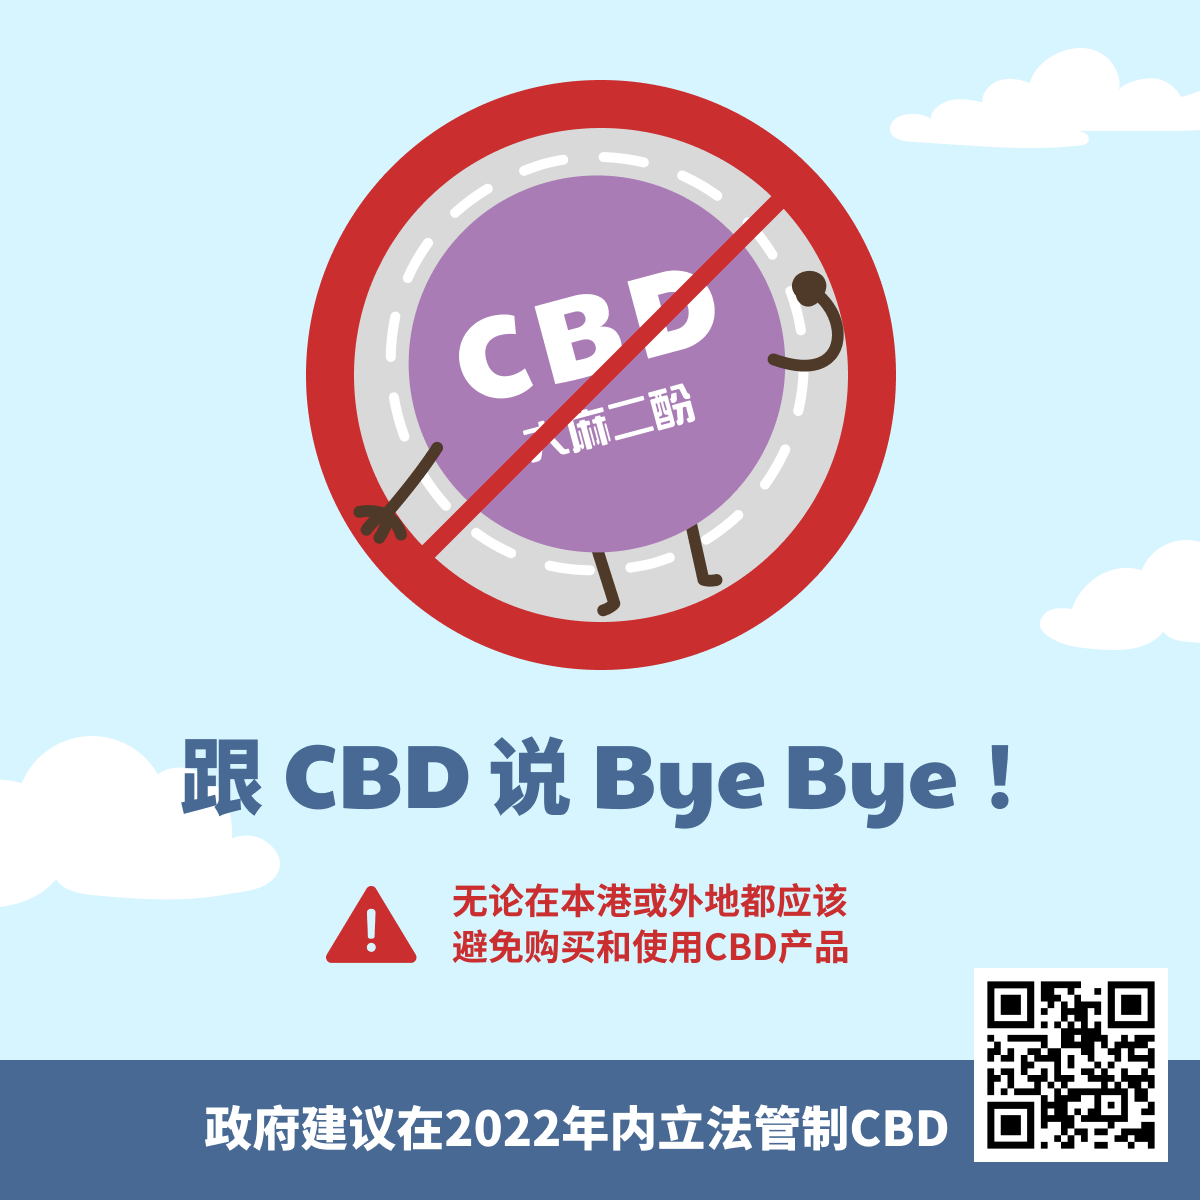 跟CBD说Bye Bye!